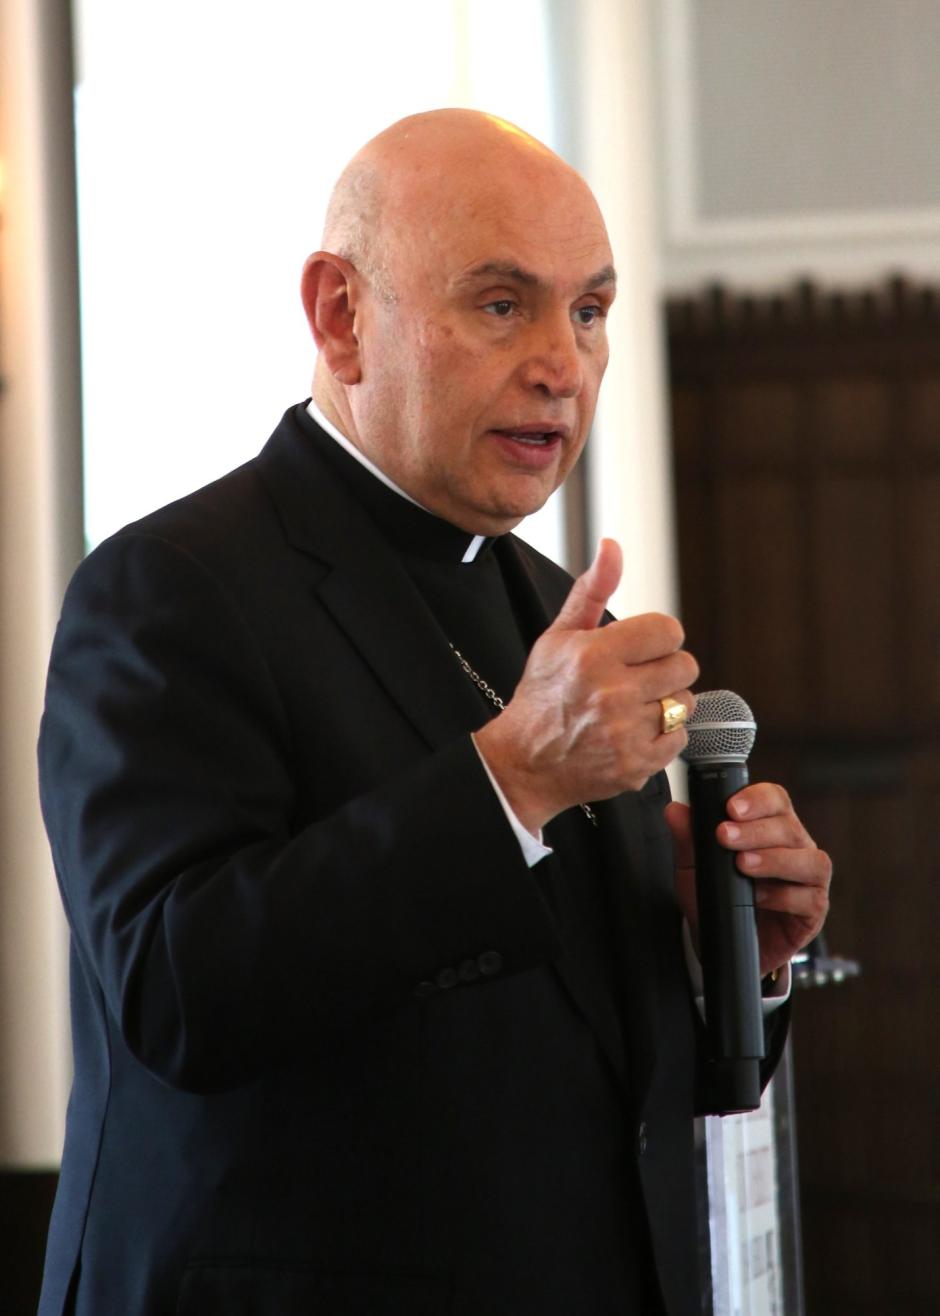 El obispo Mario E. Dorsonville pide una reforma en el sistema migratorio estadounidense